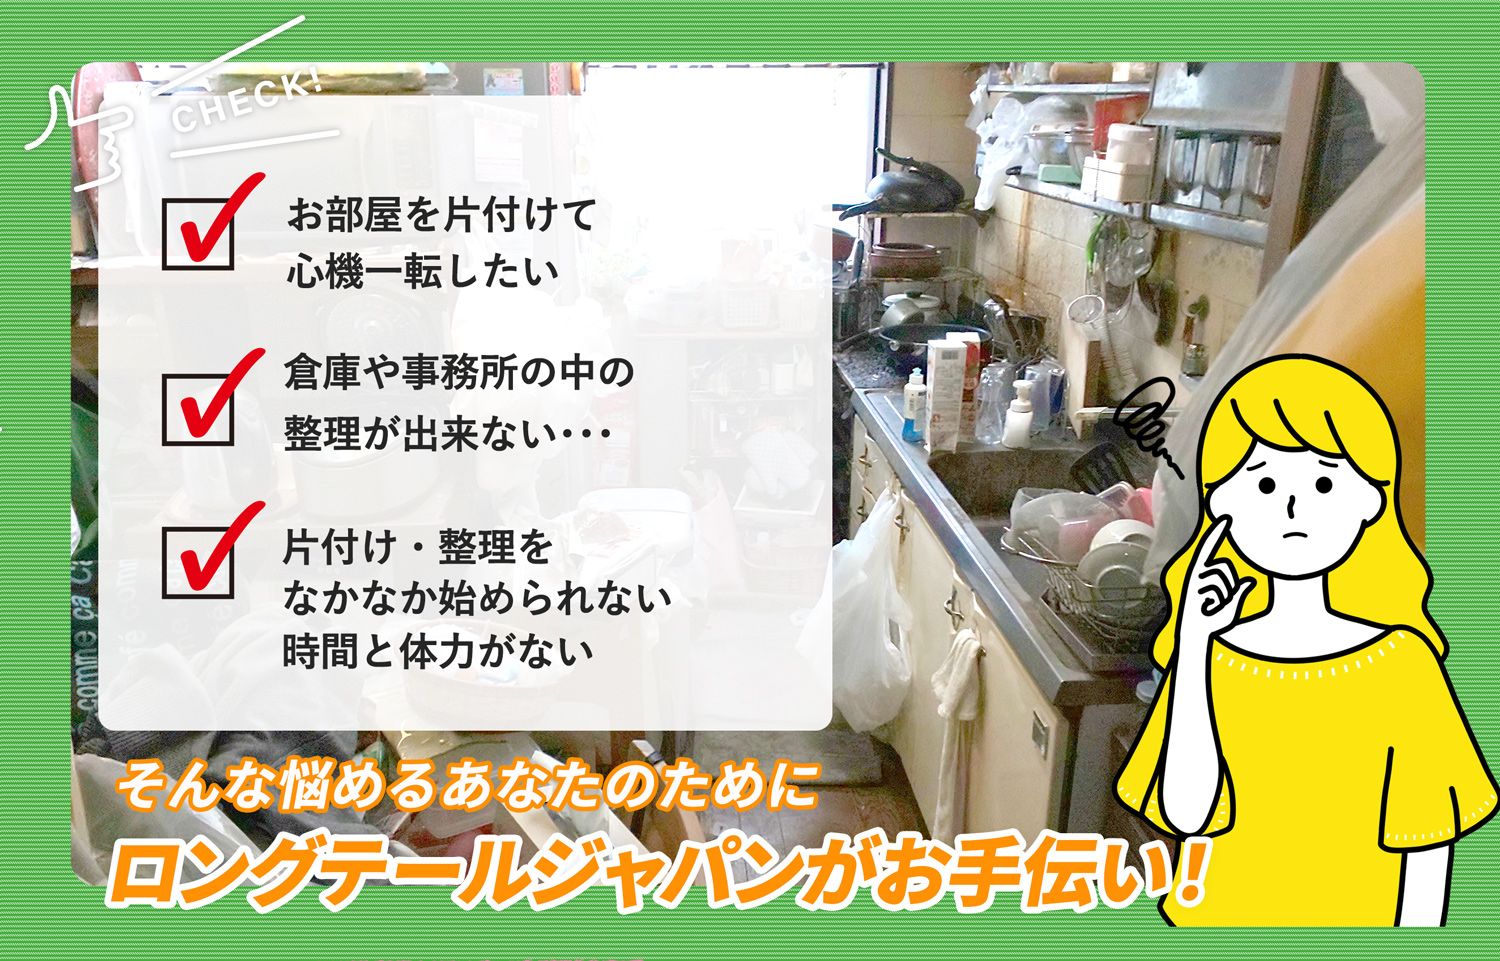 芳賀郡益子町でお部屋の中から店舗、事務所、倉庫まで自分達で片付けられない場合はお部屋の片付け隊がやらせていただきます。